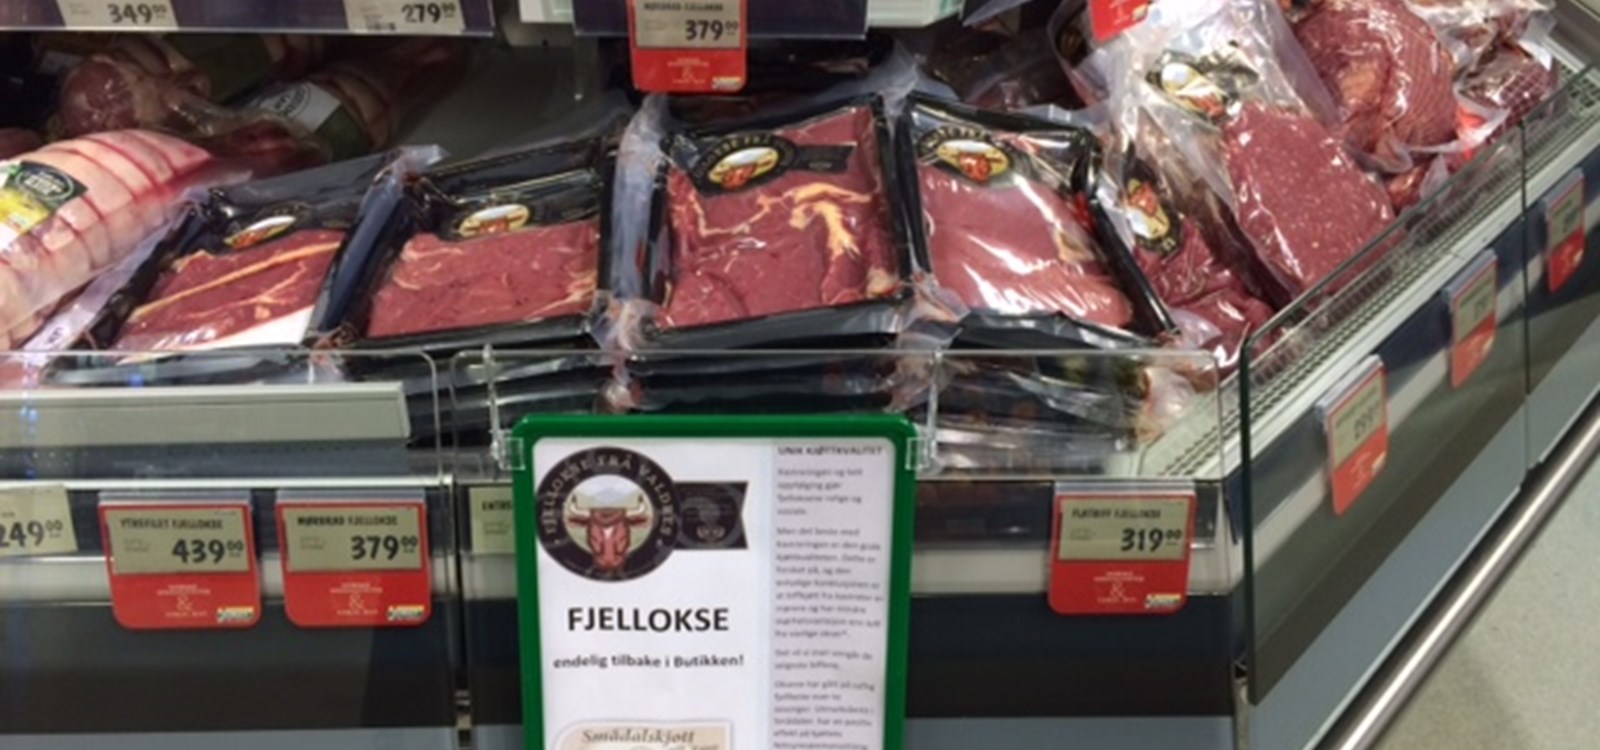 Pakningane er merka med både Smådalskjøtt og «Fjellokse frå Valdres».